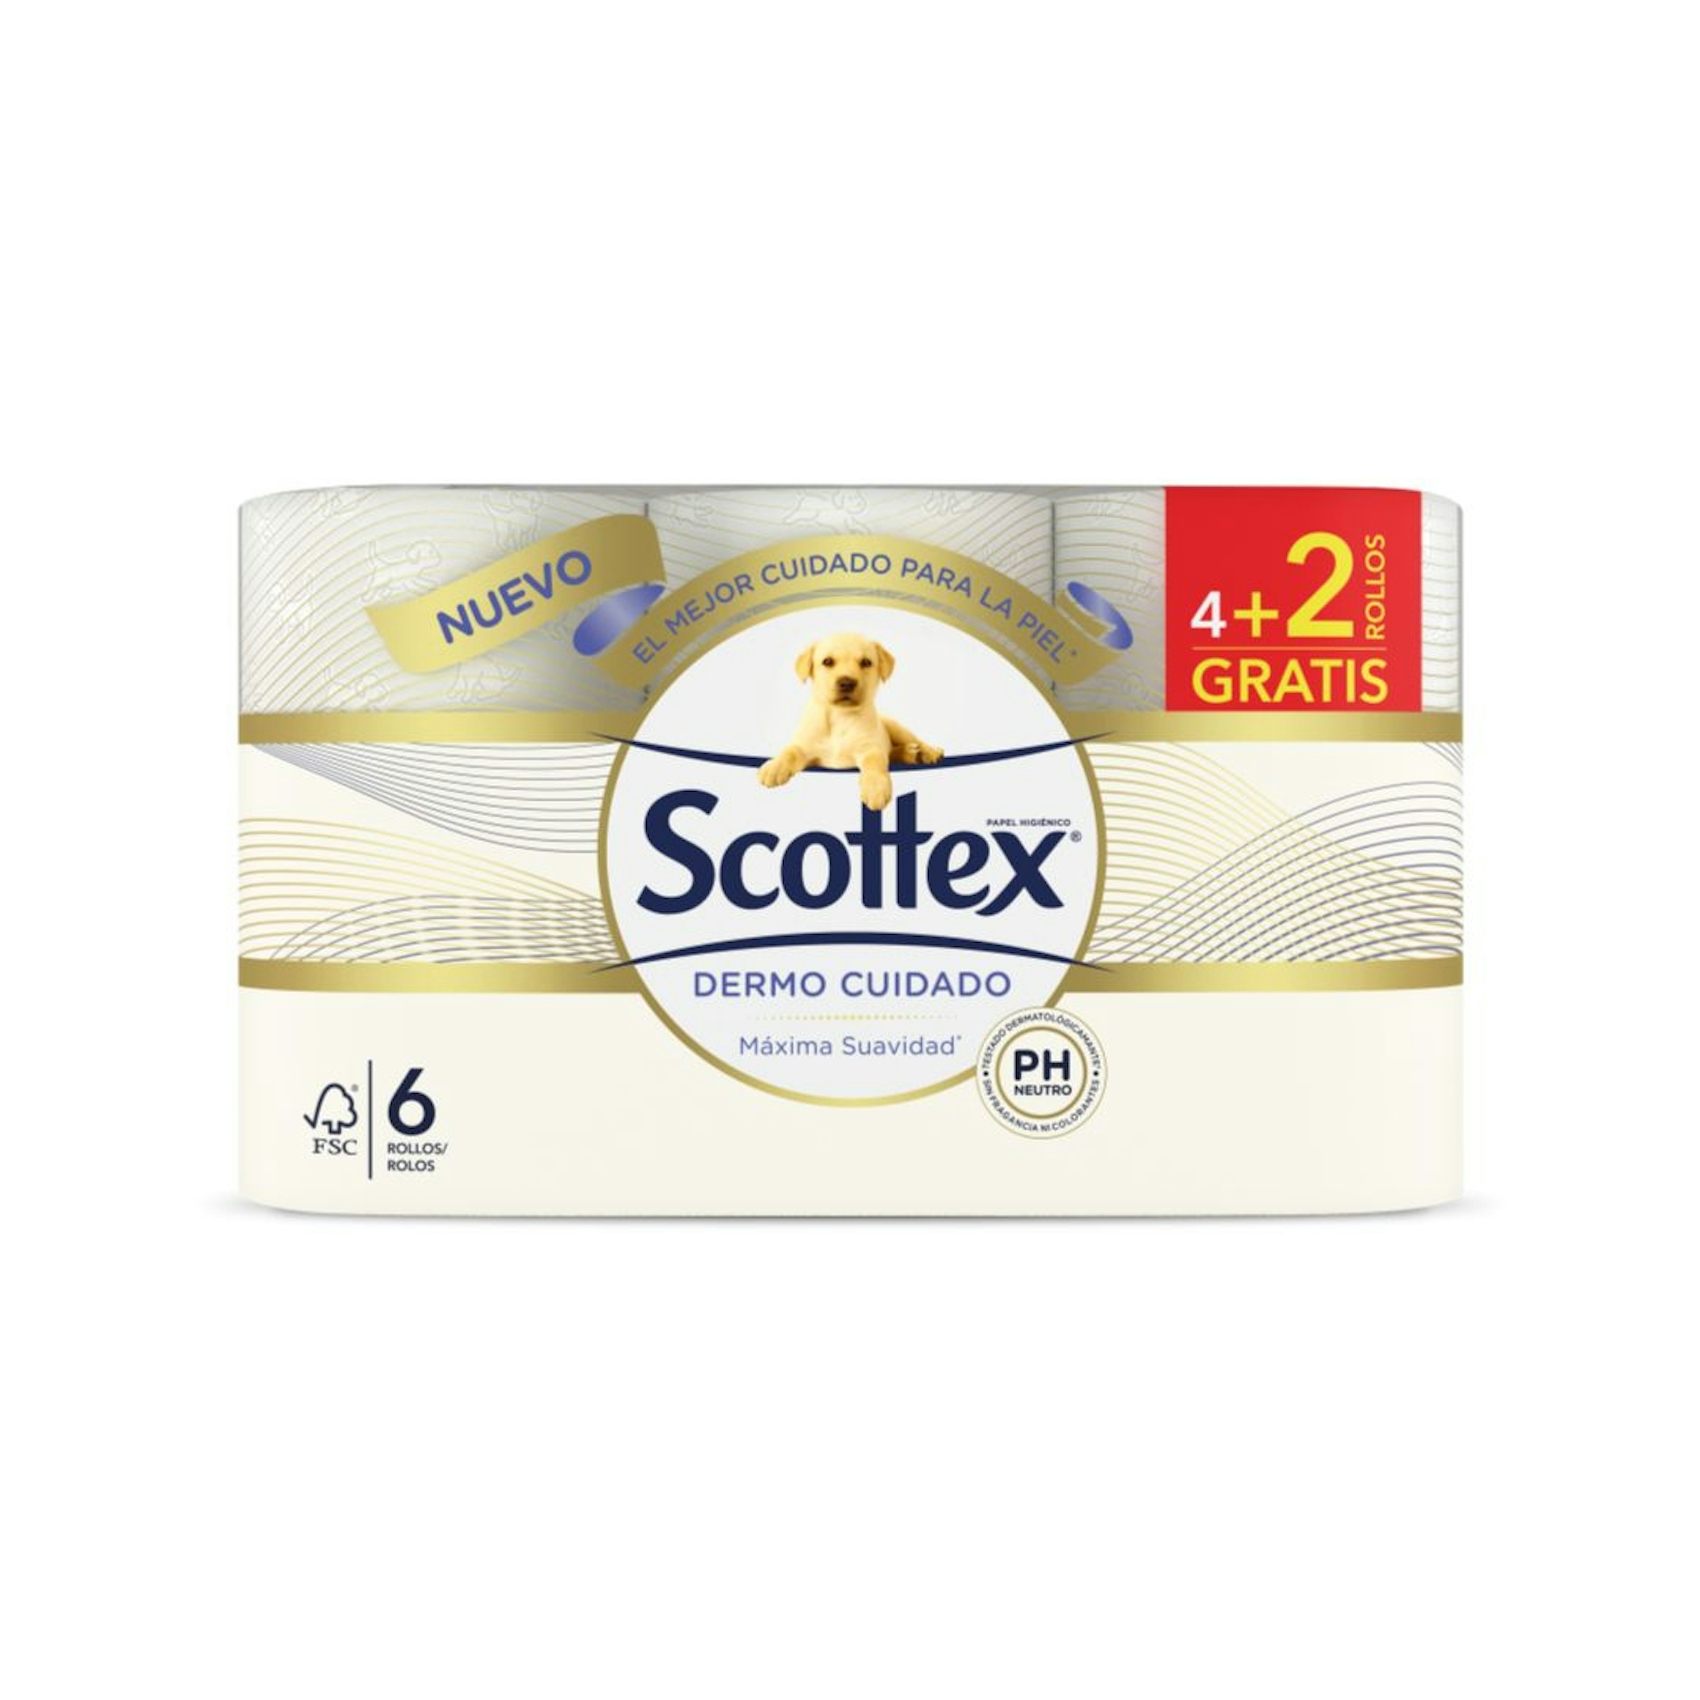 Papel higiénico dermocuidado 6 rollos Scottex